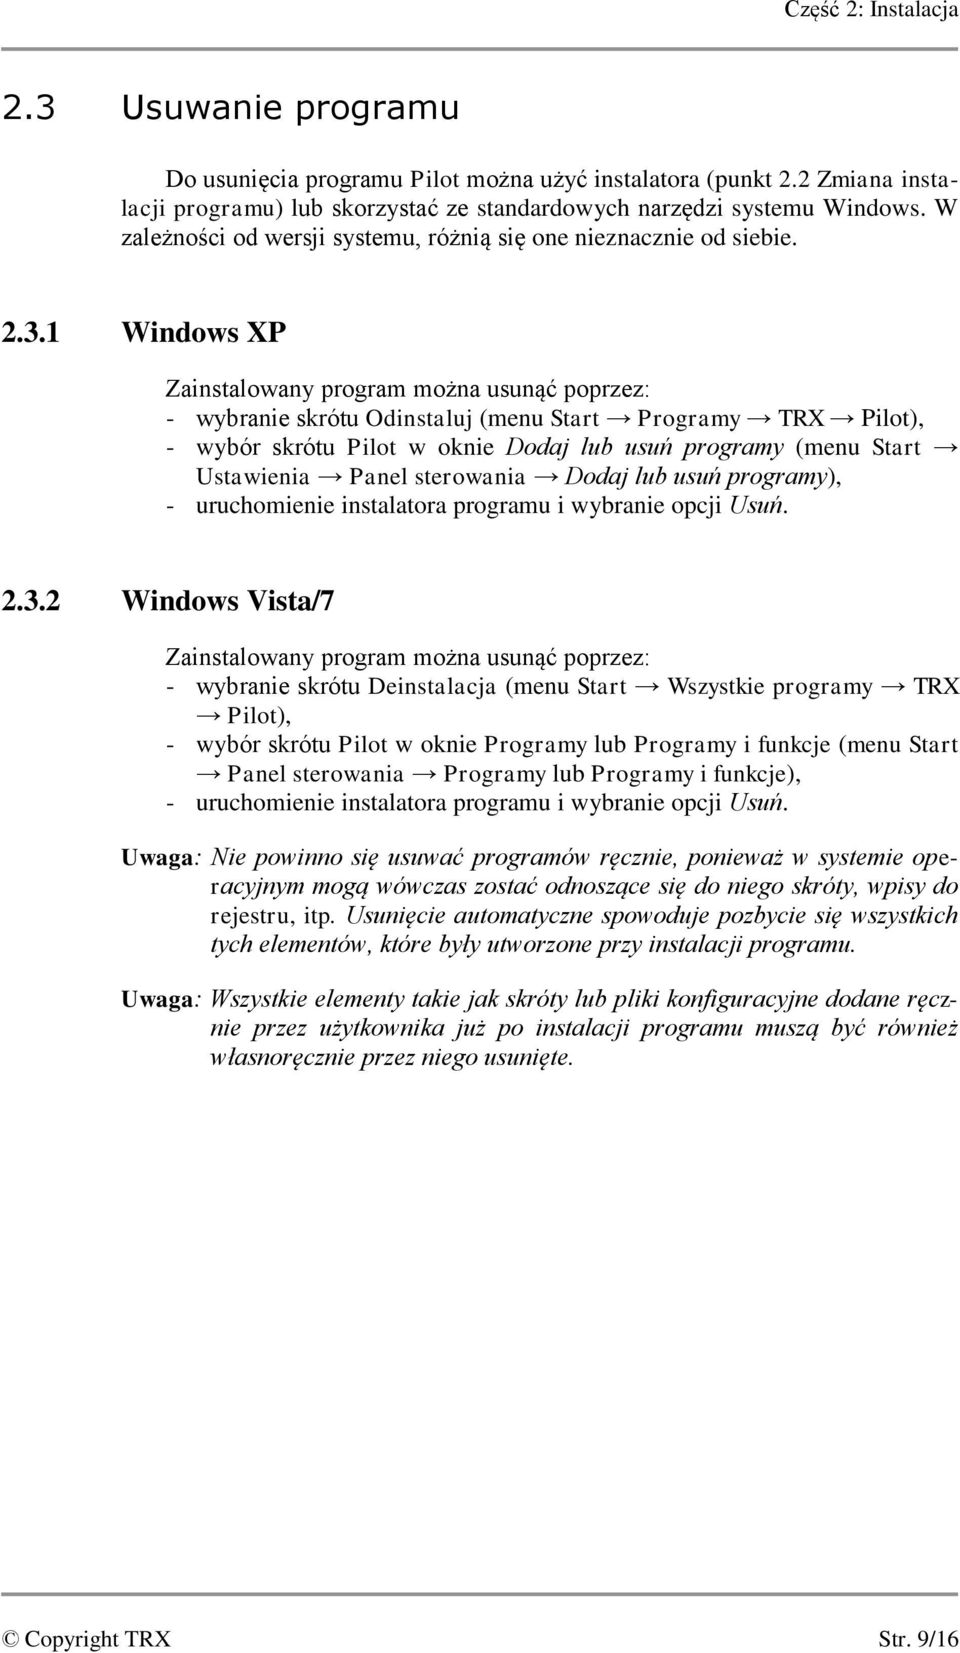 1 Windows XP Zainstalowany program można usunąć poprzez: - wybranie skrótu Odinstaluj (menu Start Programy TRX Pilot), - wybór skrótu Pilot w oknie Dodaj lub usuń programy (menu Start Ustawienia